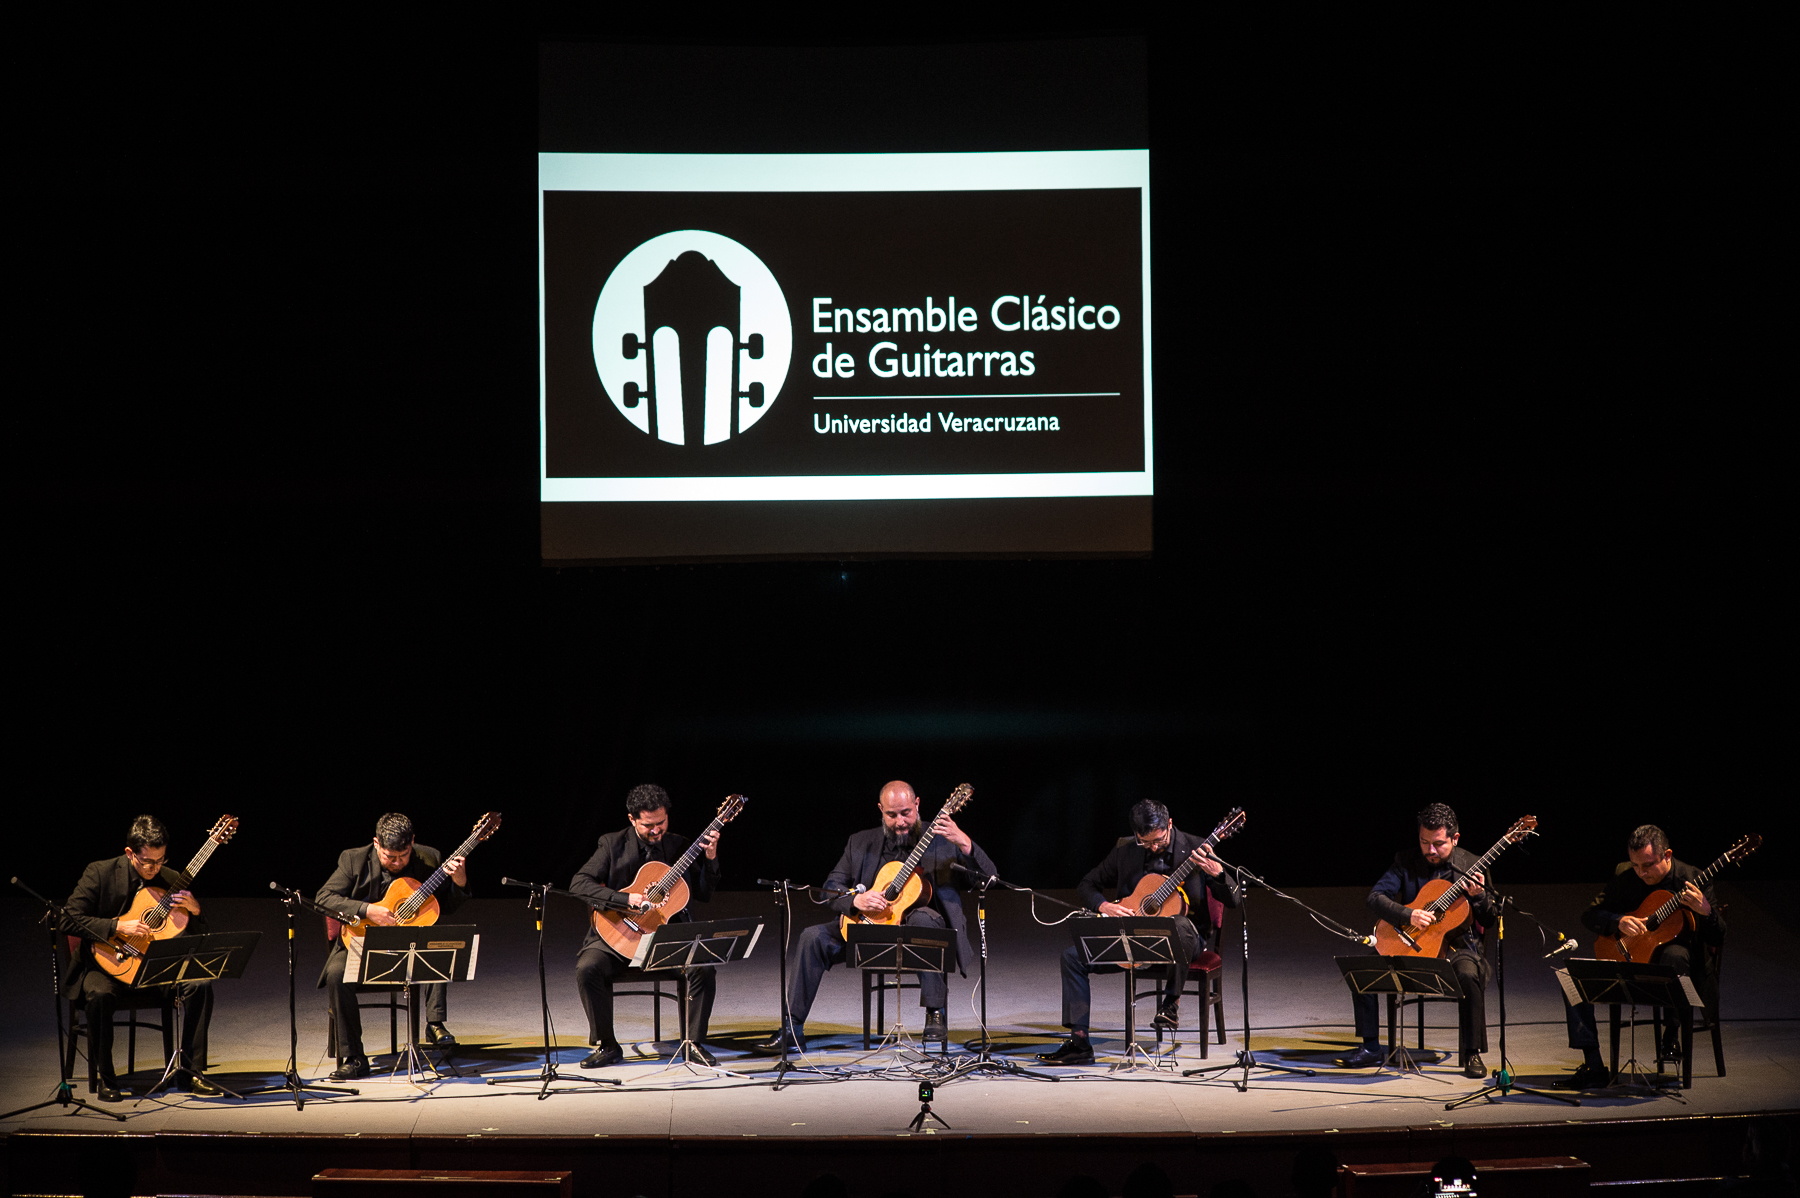 Veracruzana Üniversitesi Klasik Gitar Topluluğu